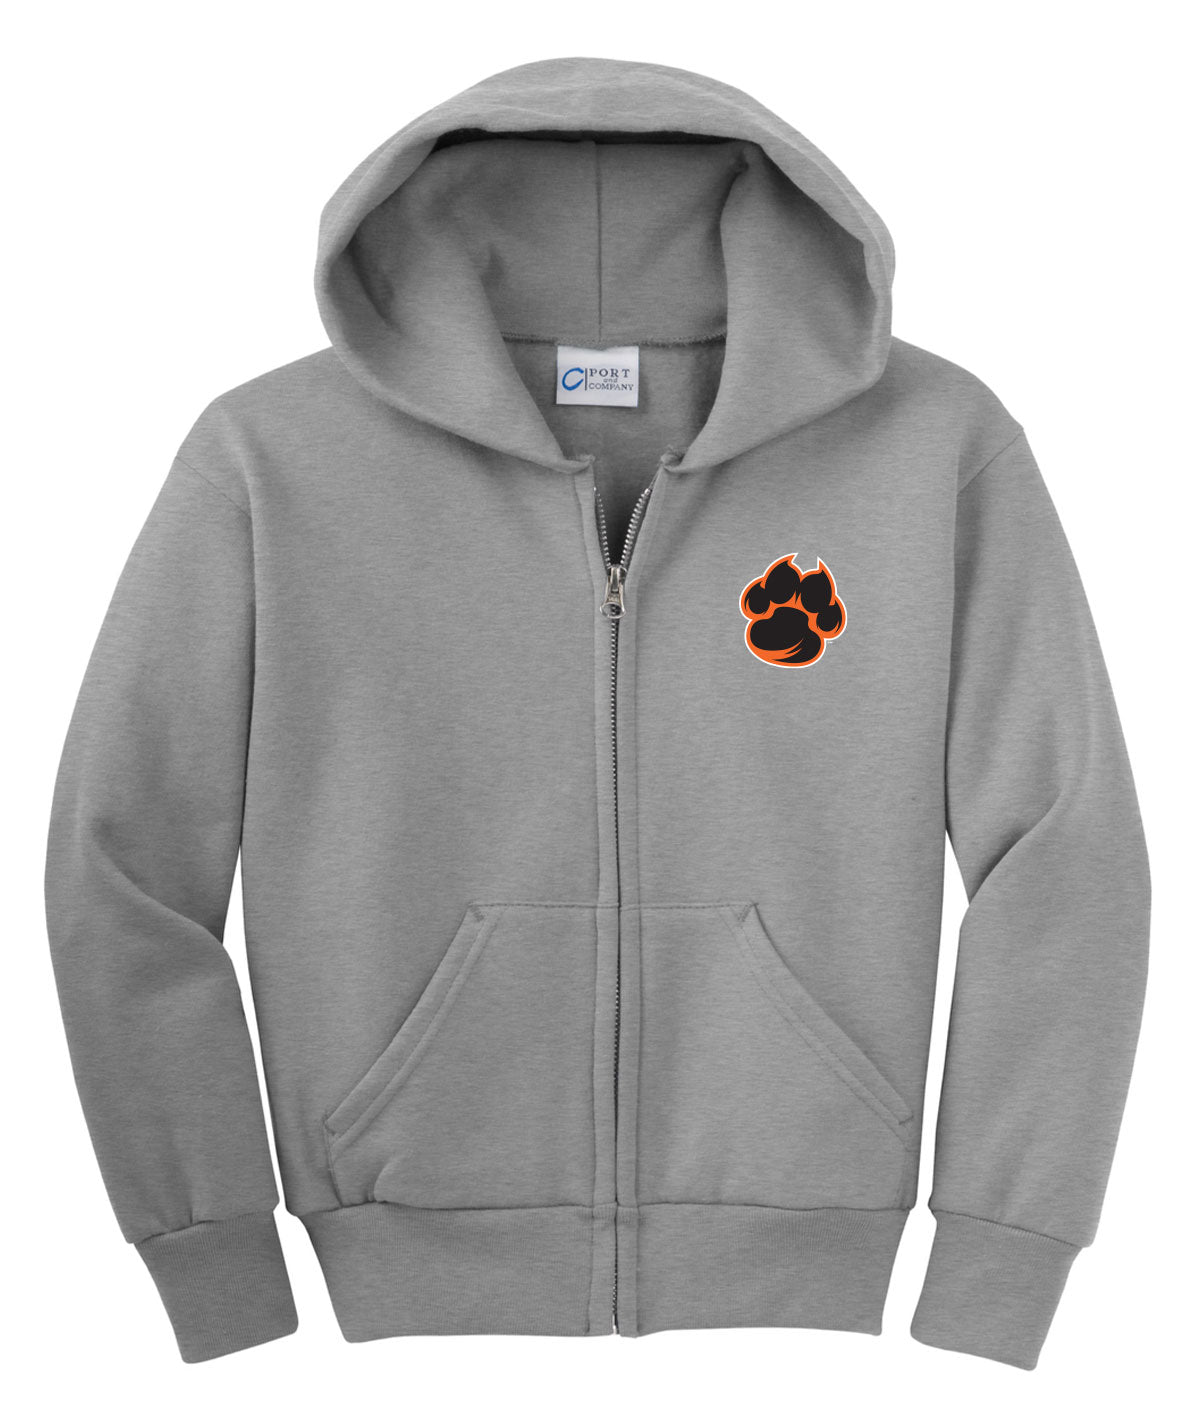 Tiger Paw Youth Fleece Full-Zip Hooded Sweatshirt